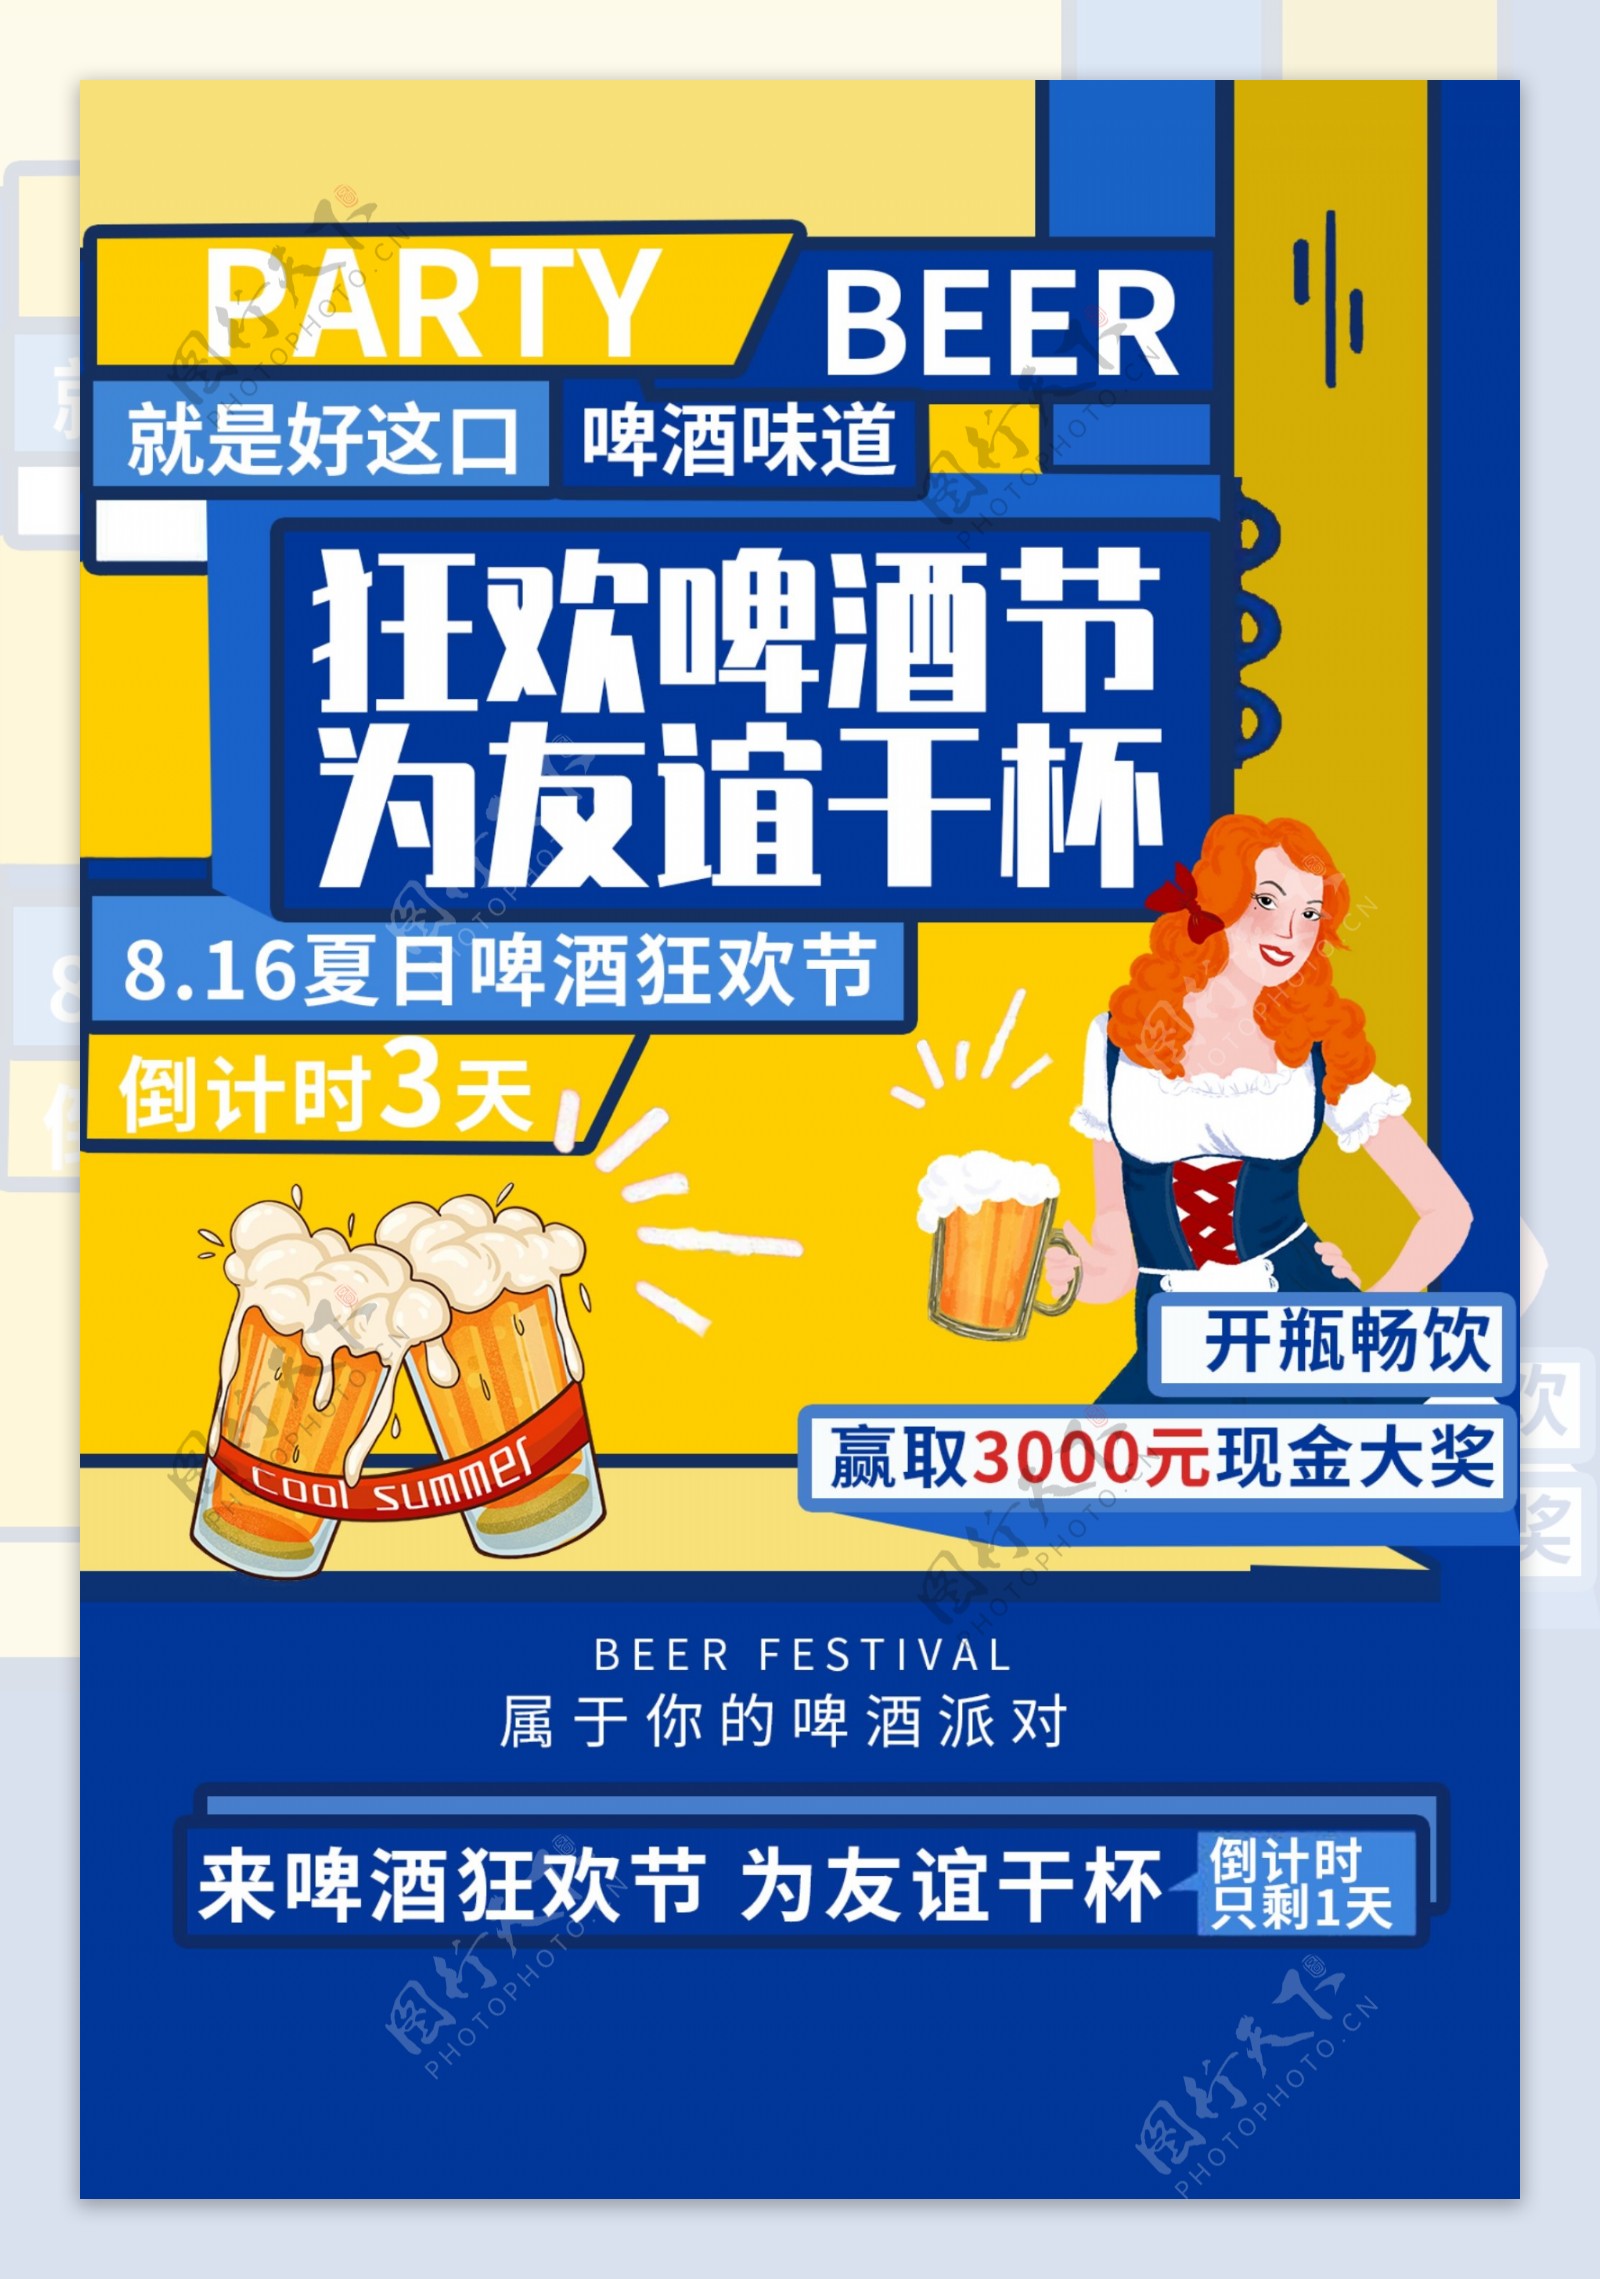 狂欢啤酒节宣传活动海报素材